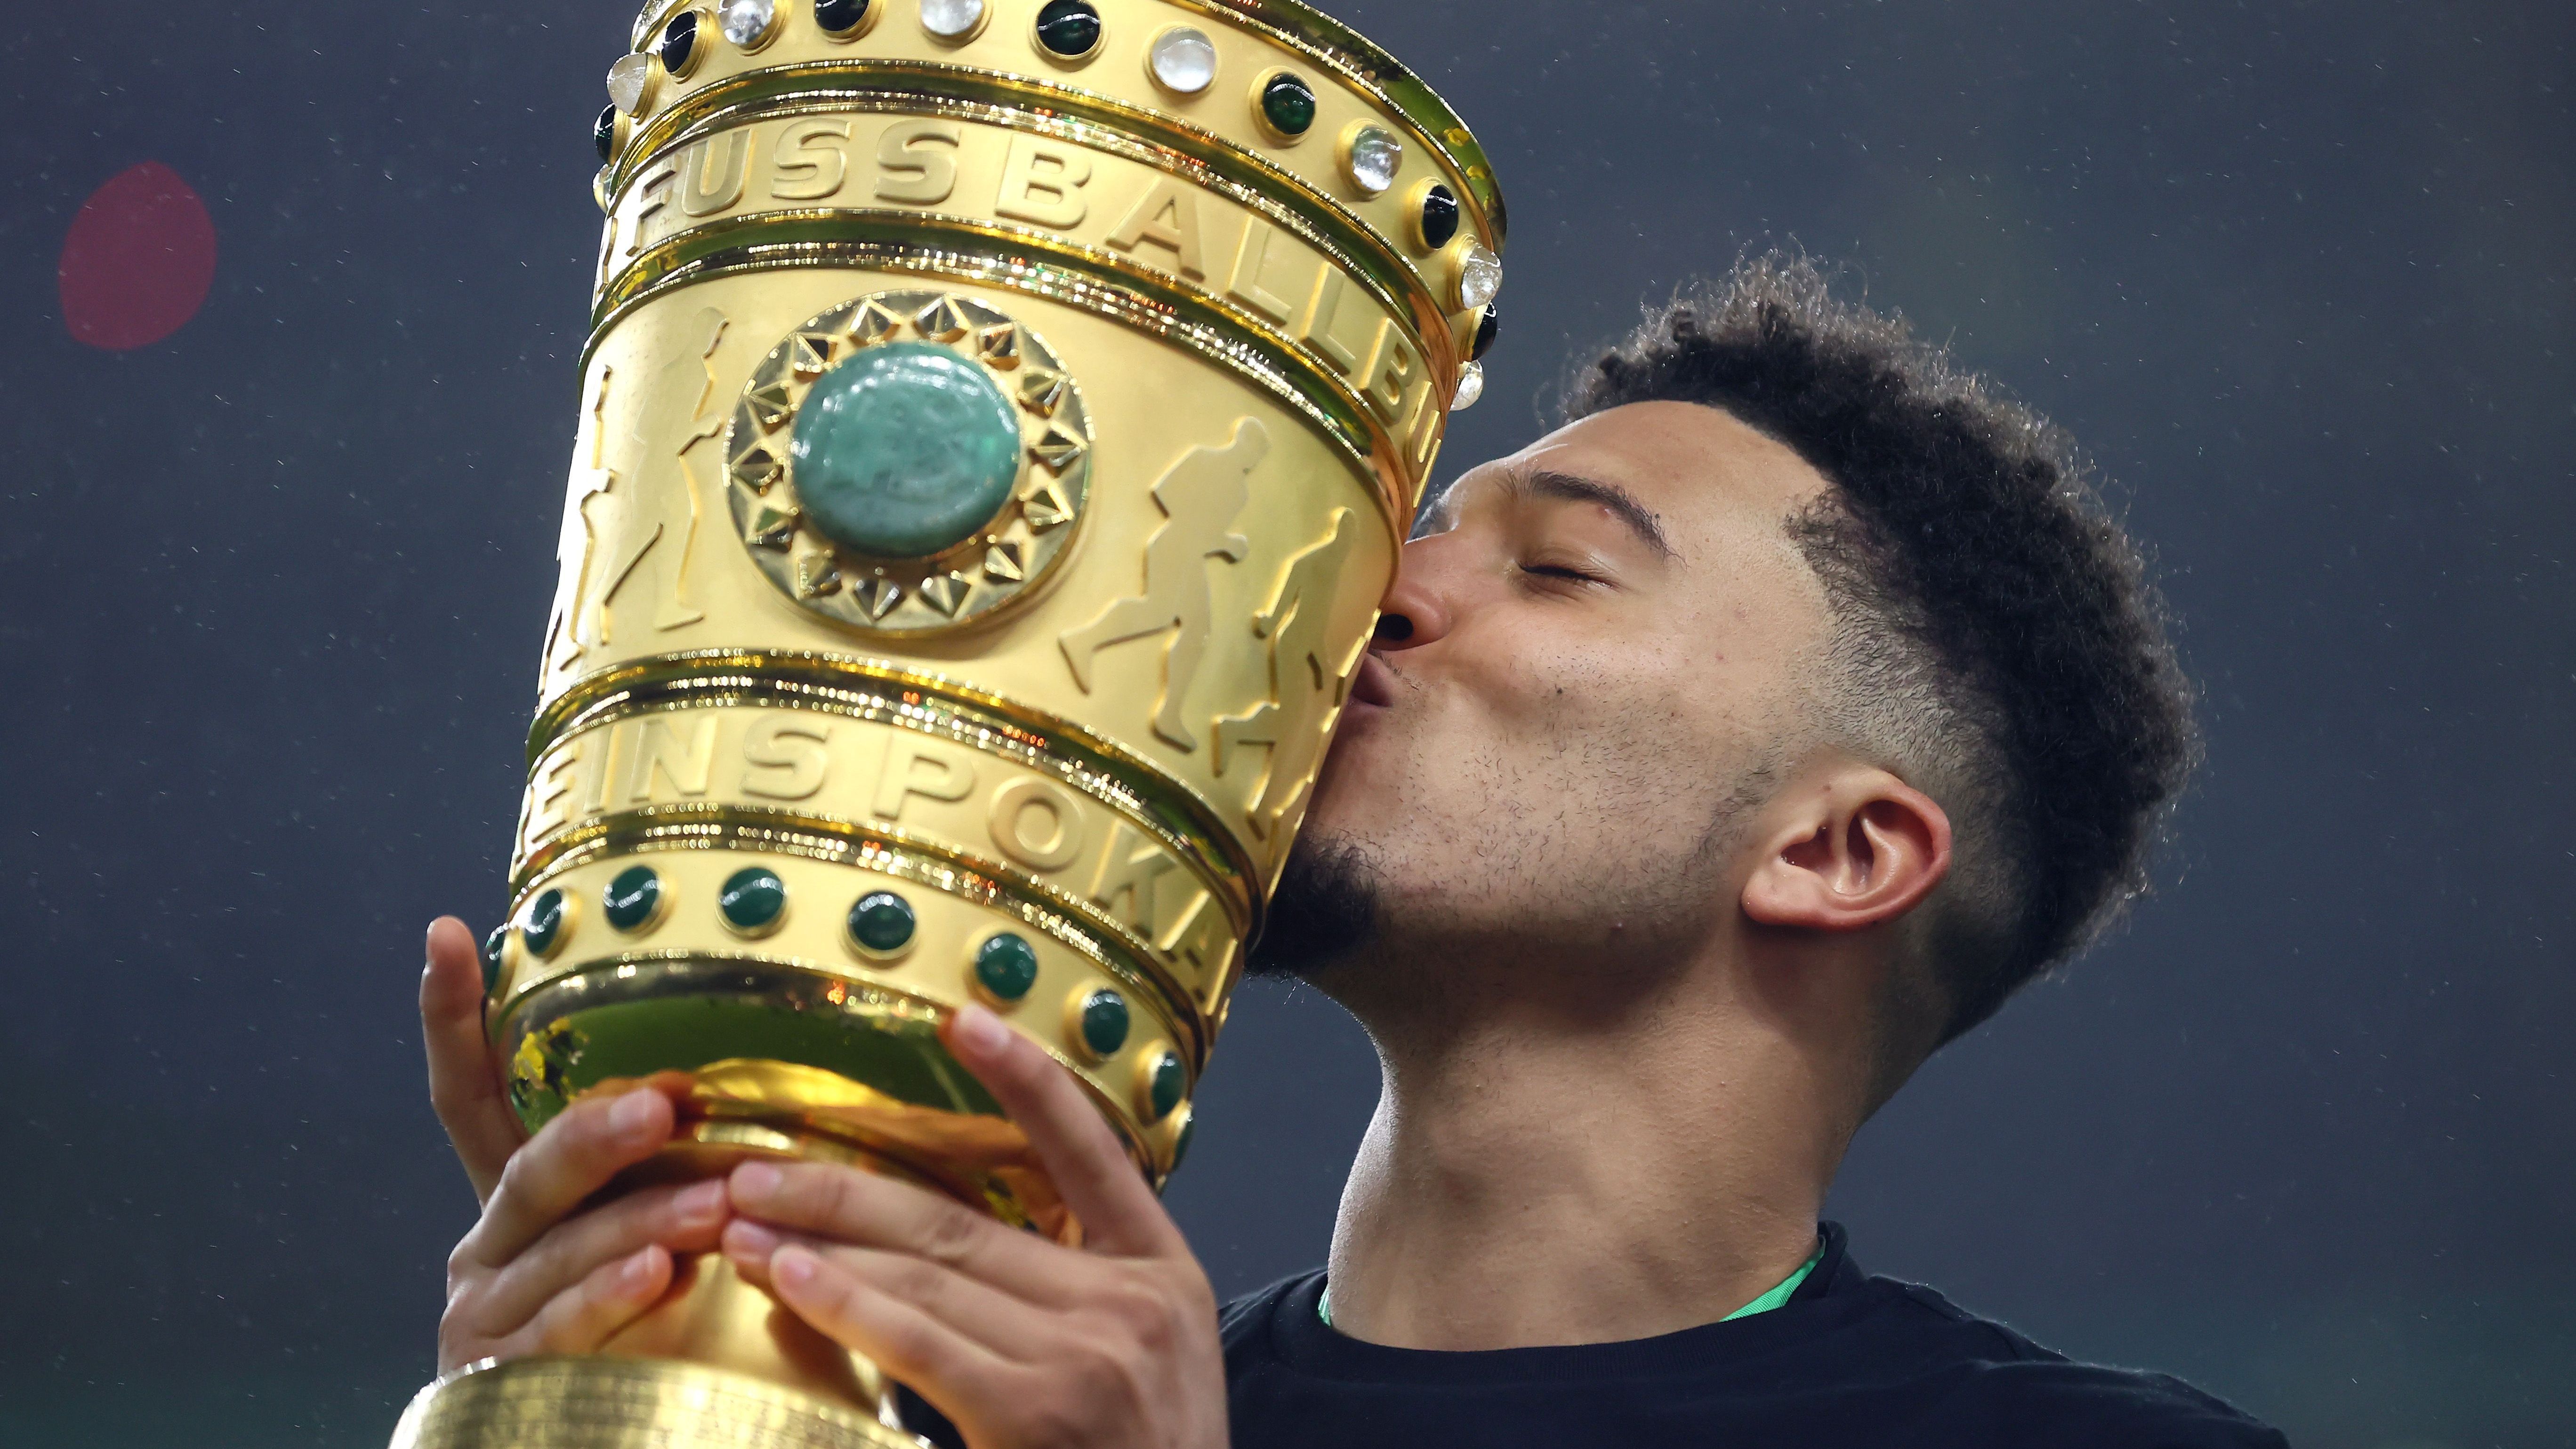 <strong>Platz 3: DFB Pokal (Fußball)</strong><br>Der gelingt dafür dem DFB Pokal. Was für ein Gerät! Golden, mächtig, ikonisch! Da geht nicht viel drüber.